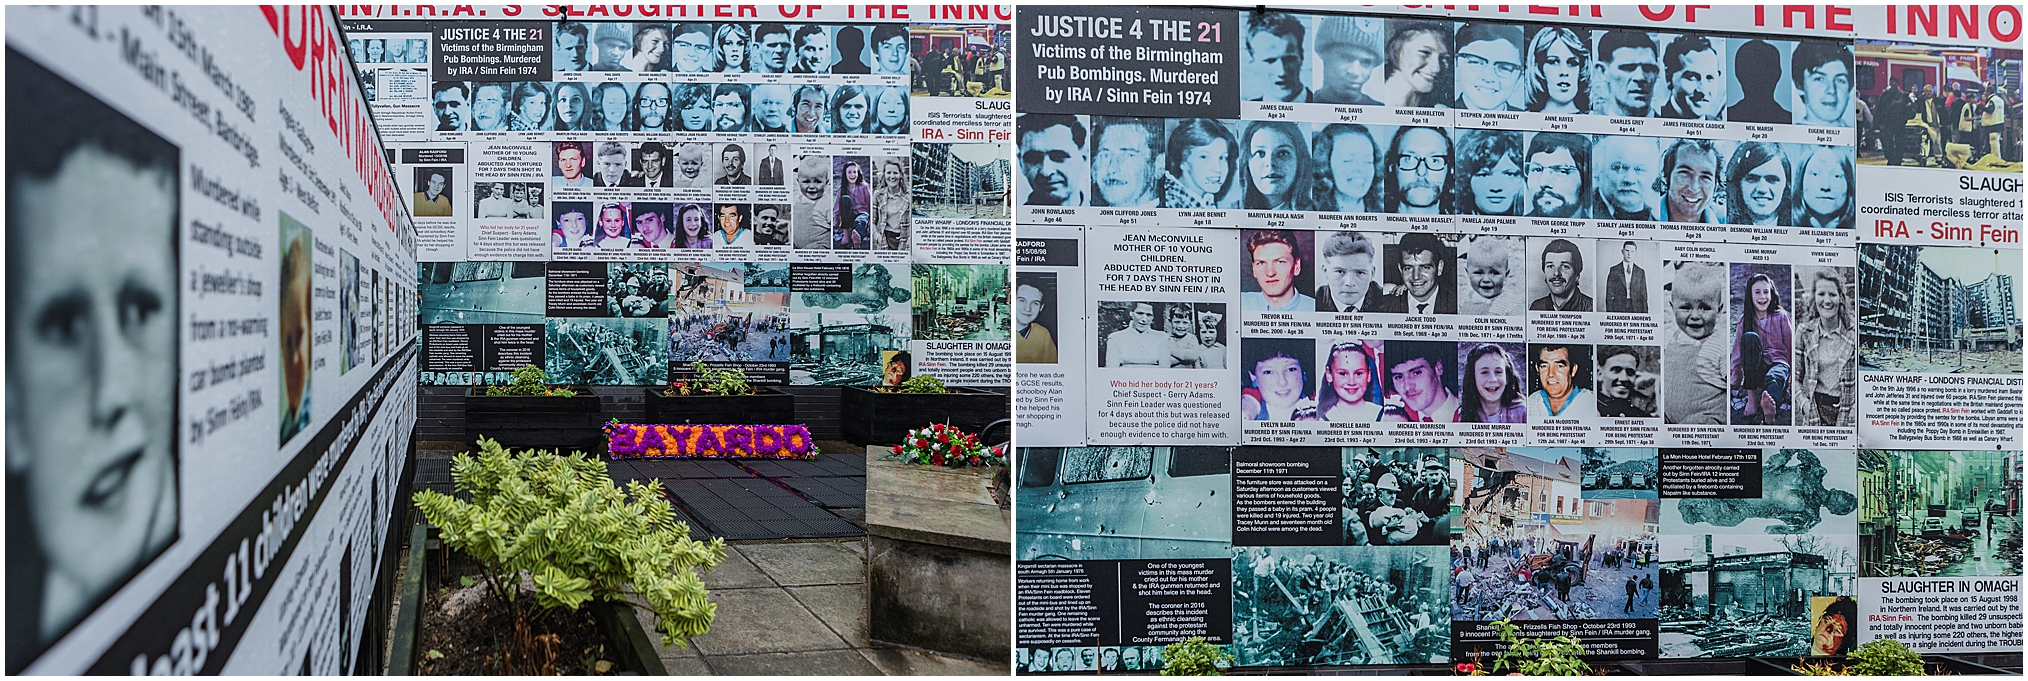 Northern Coast, Ireland; Belfast, IRA street murals and memorials